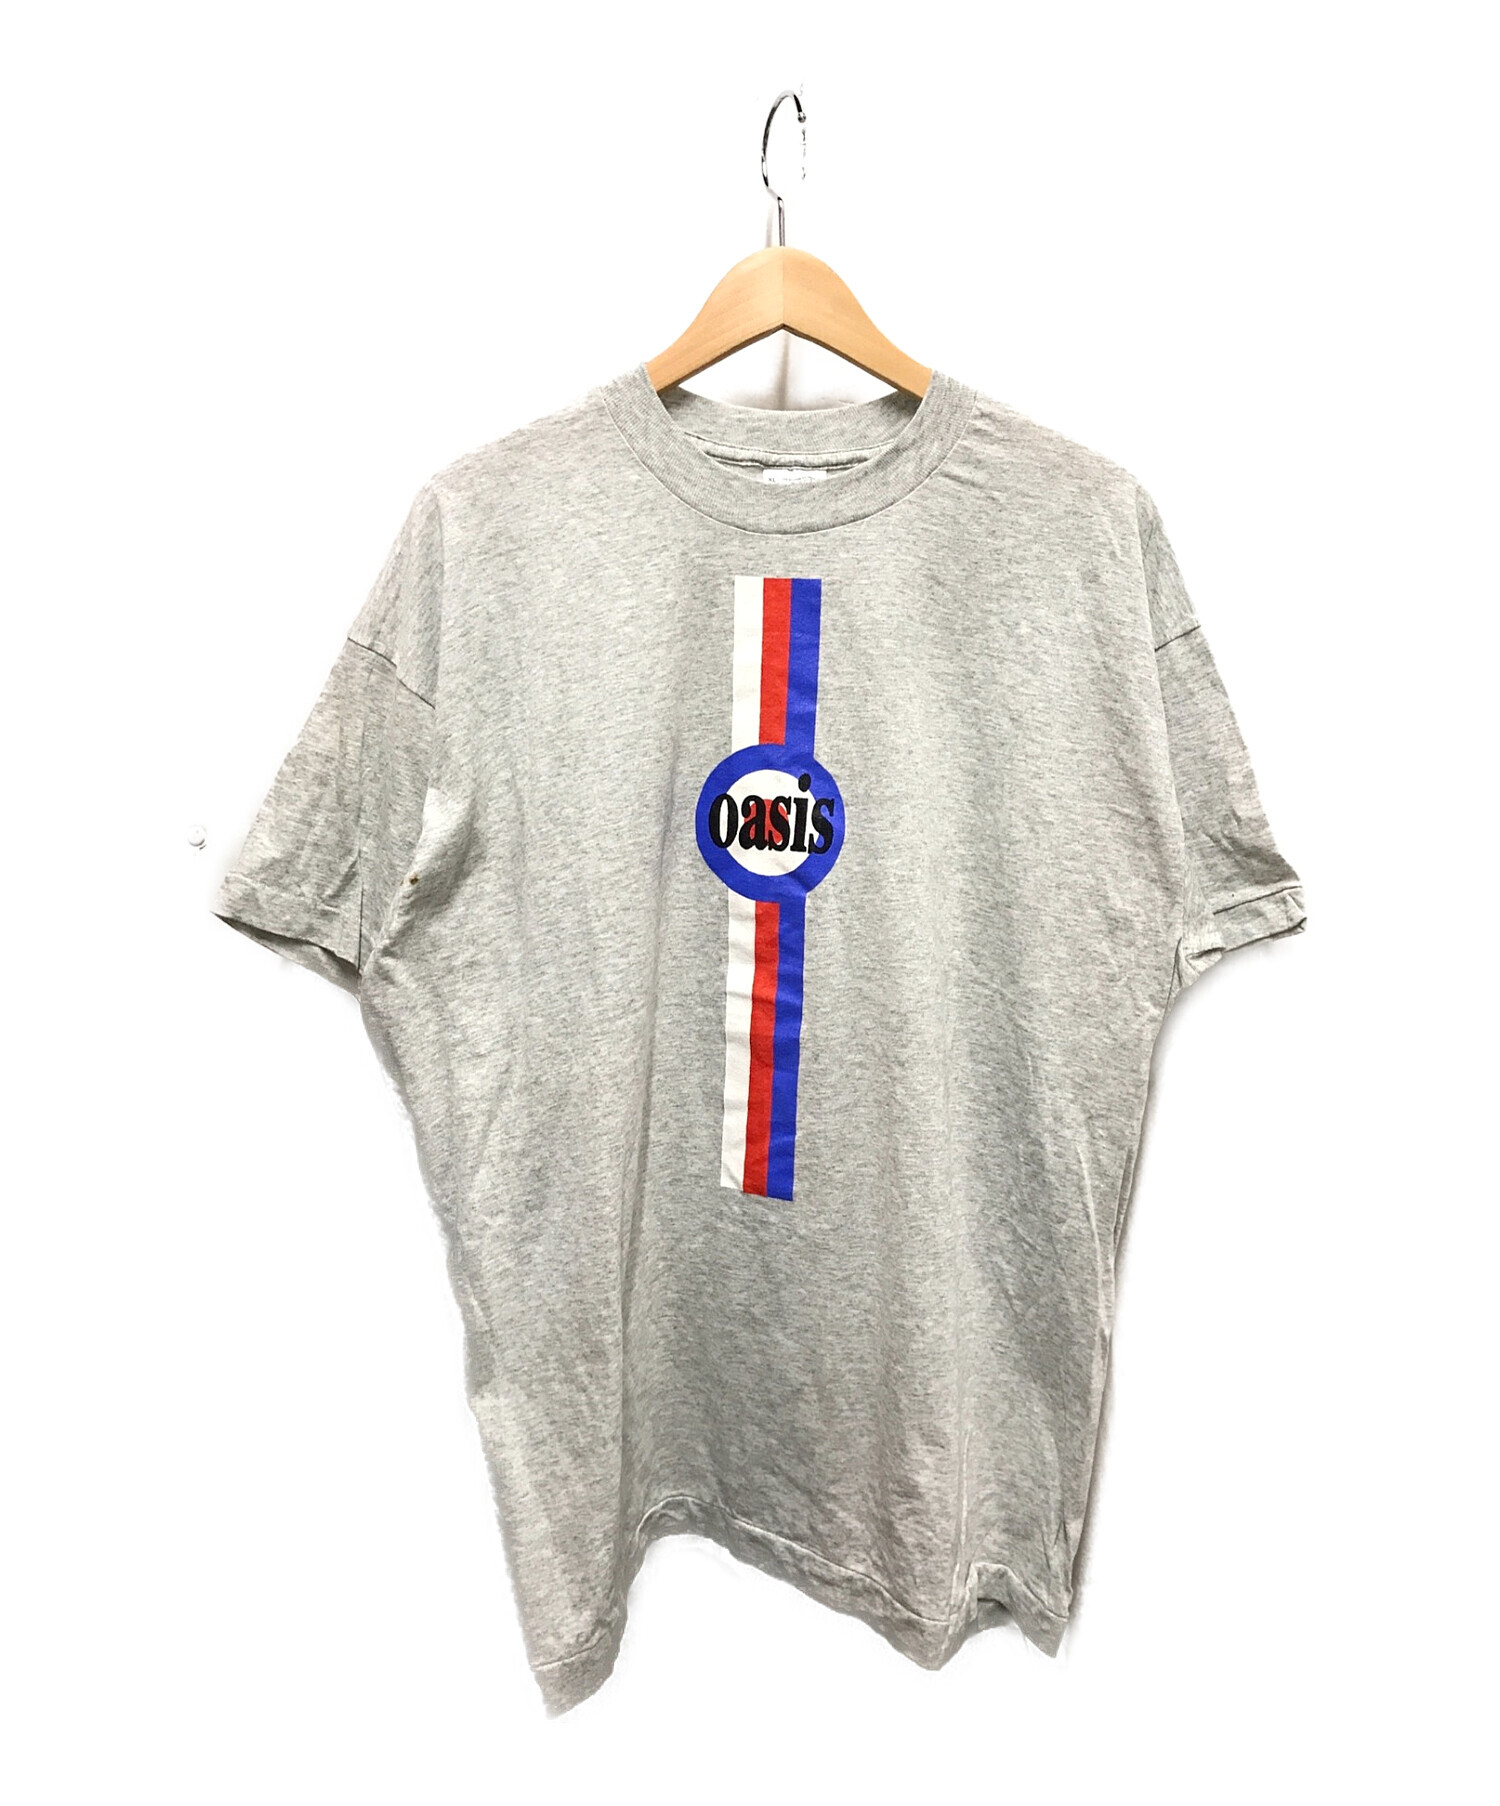 Oasis Tシャツ 90s オフィシャル ヴィンテージ バンドT古着屋で購入しました